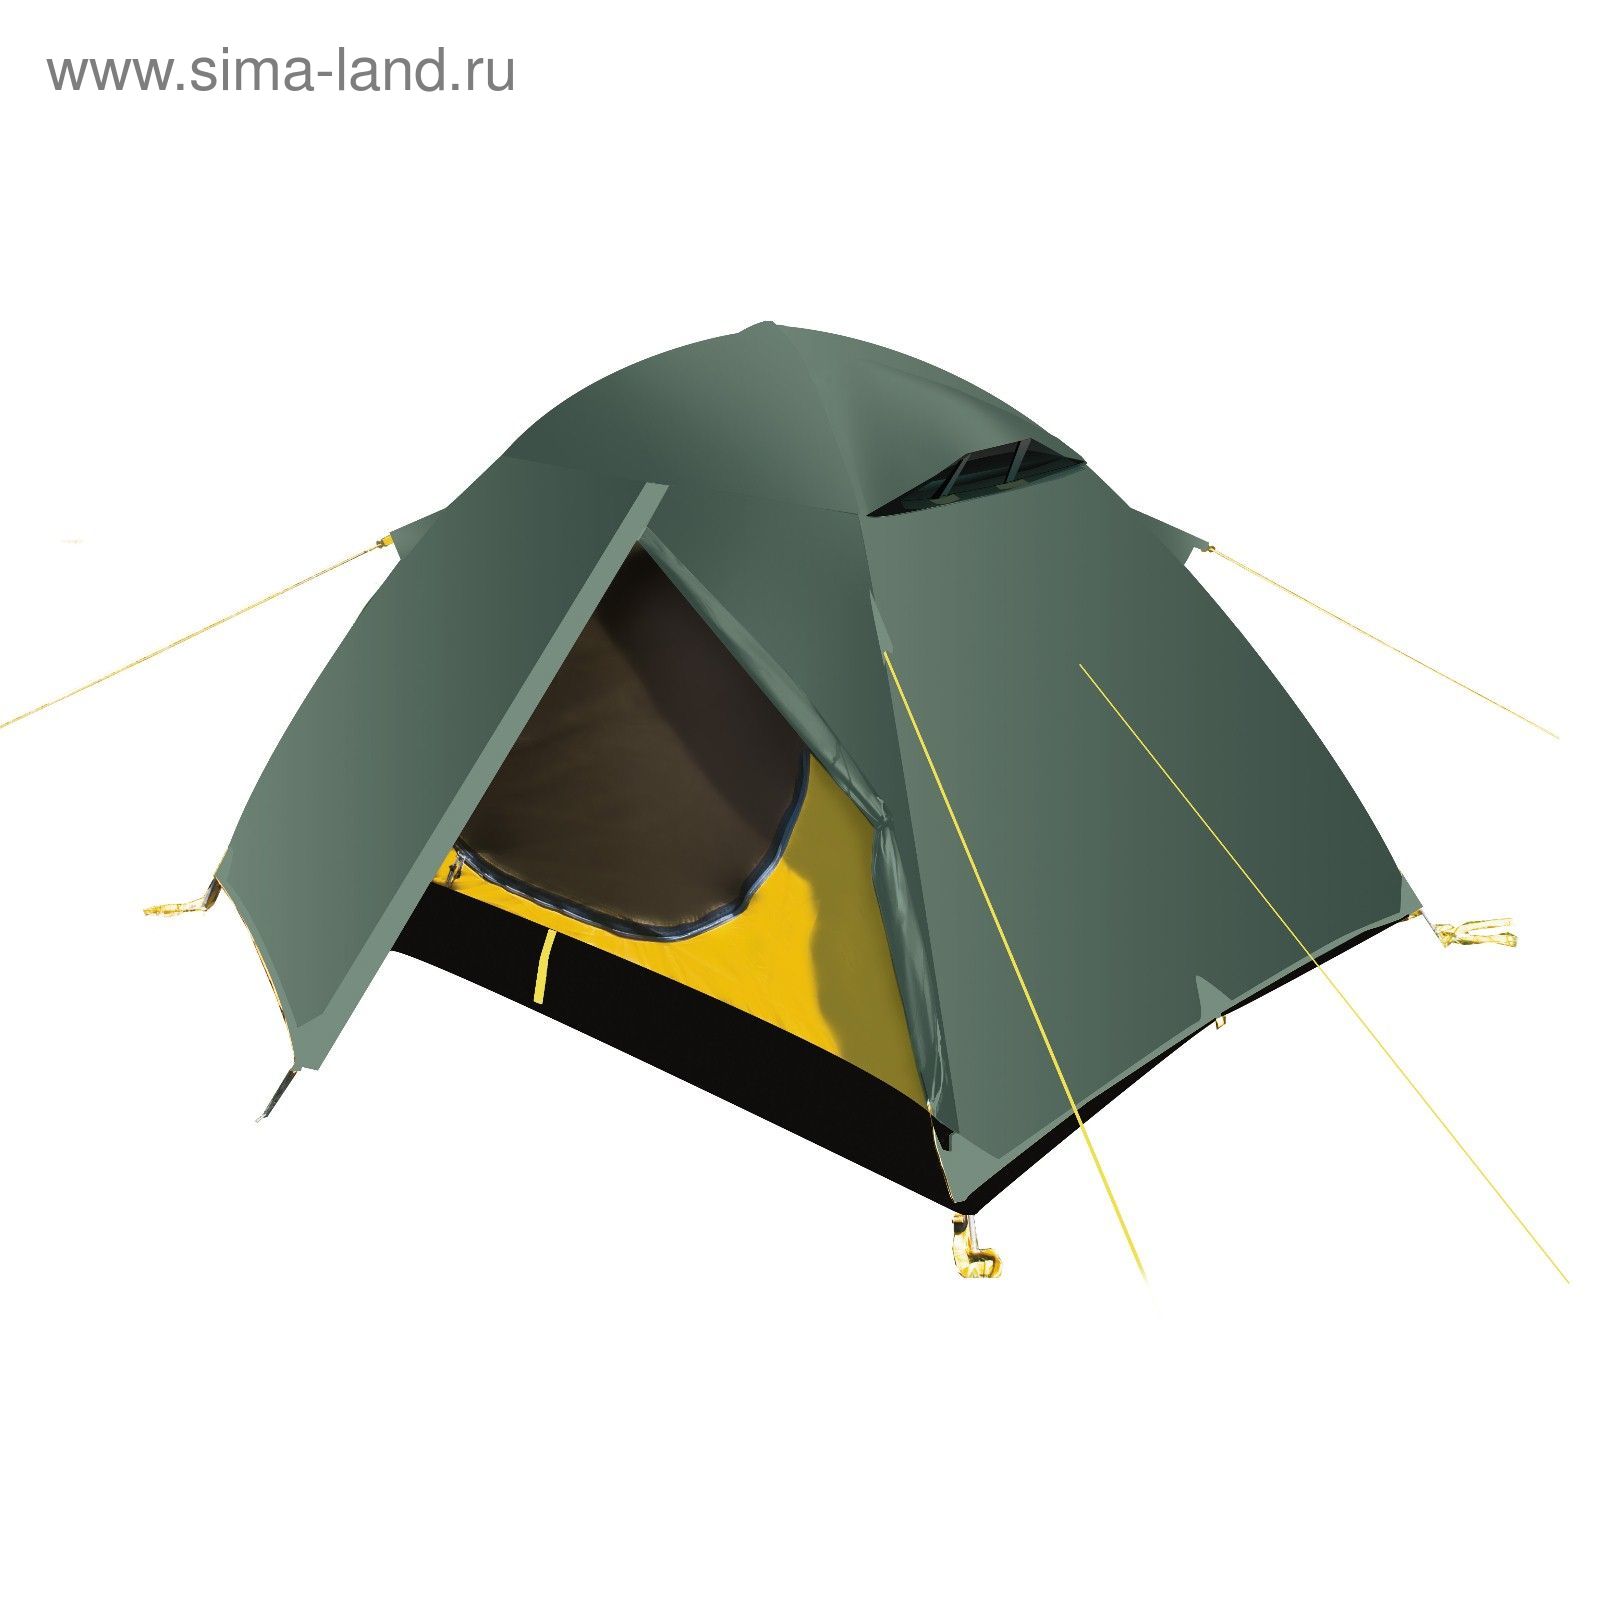 Палатка, серия "Trekking" Travel 2, зеленая, двухместная